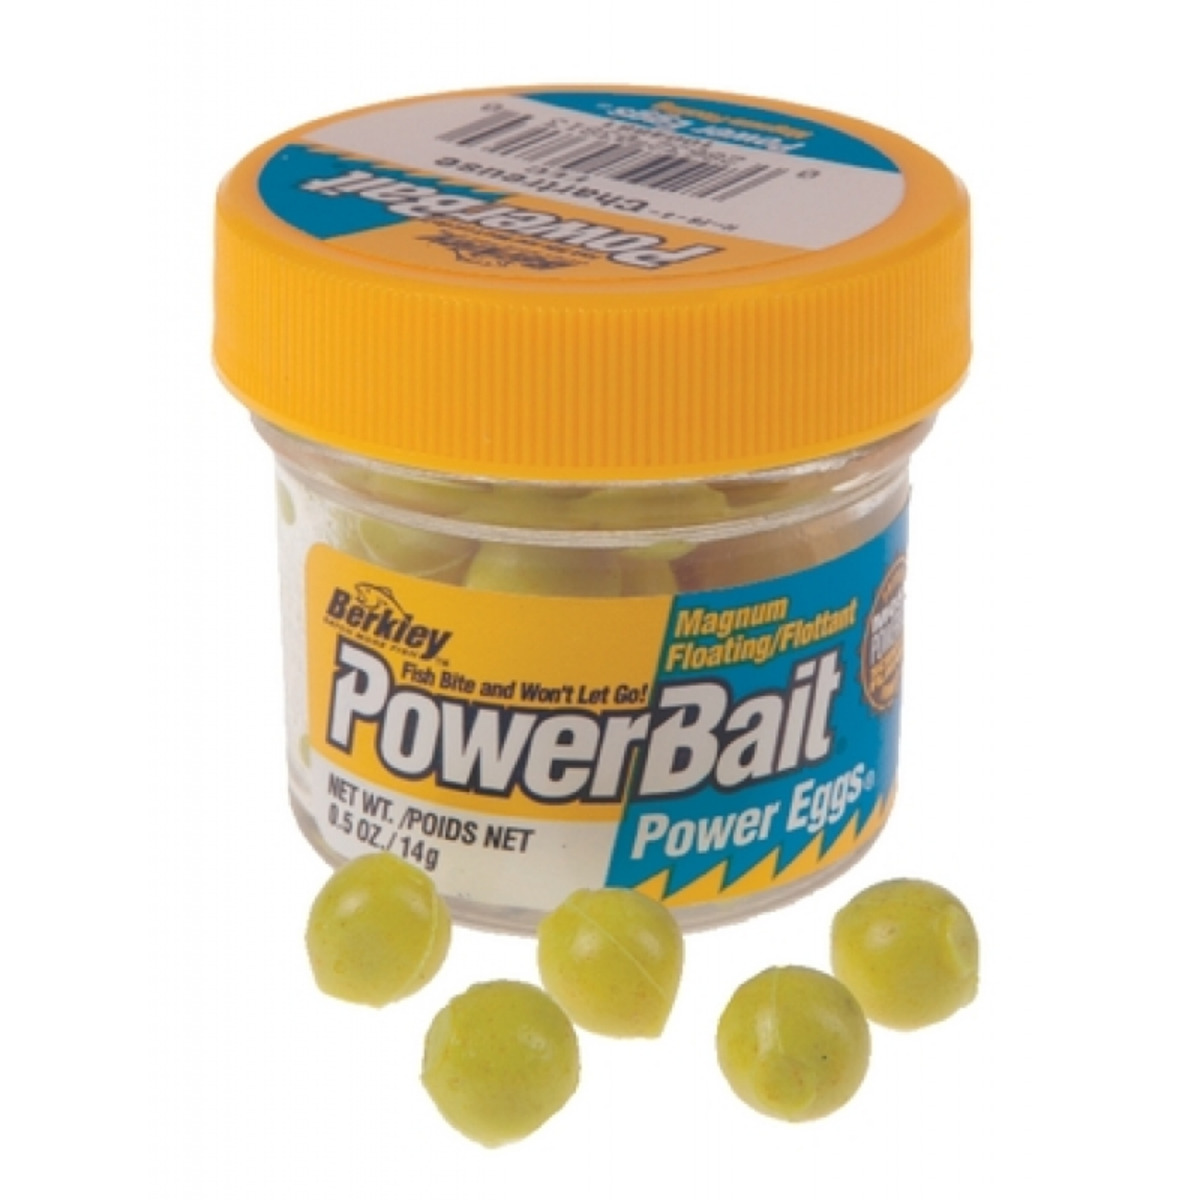 Berkley Powerbait Sparkle Power Eggs - Dough Eggs - 14 g - Chartreuse